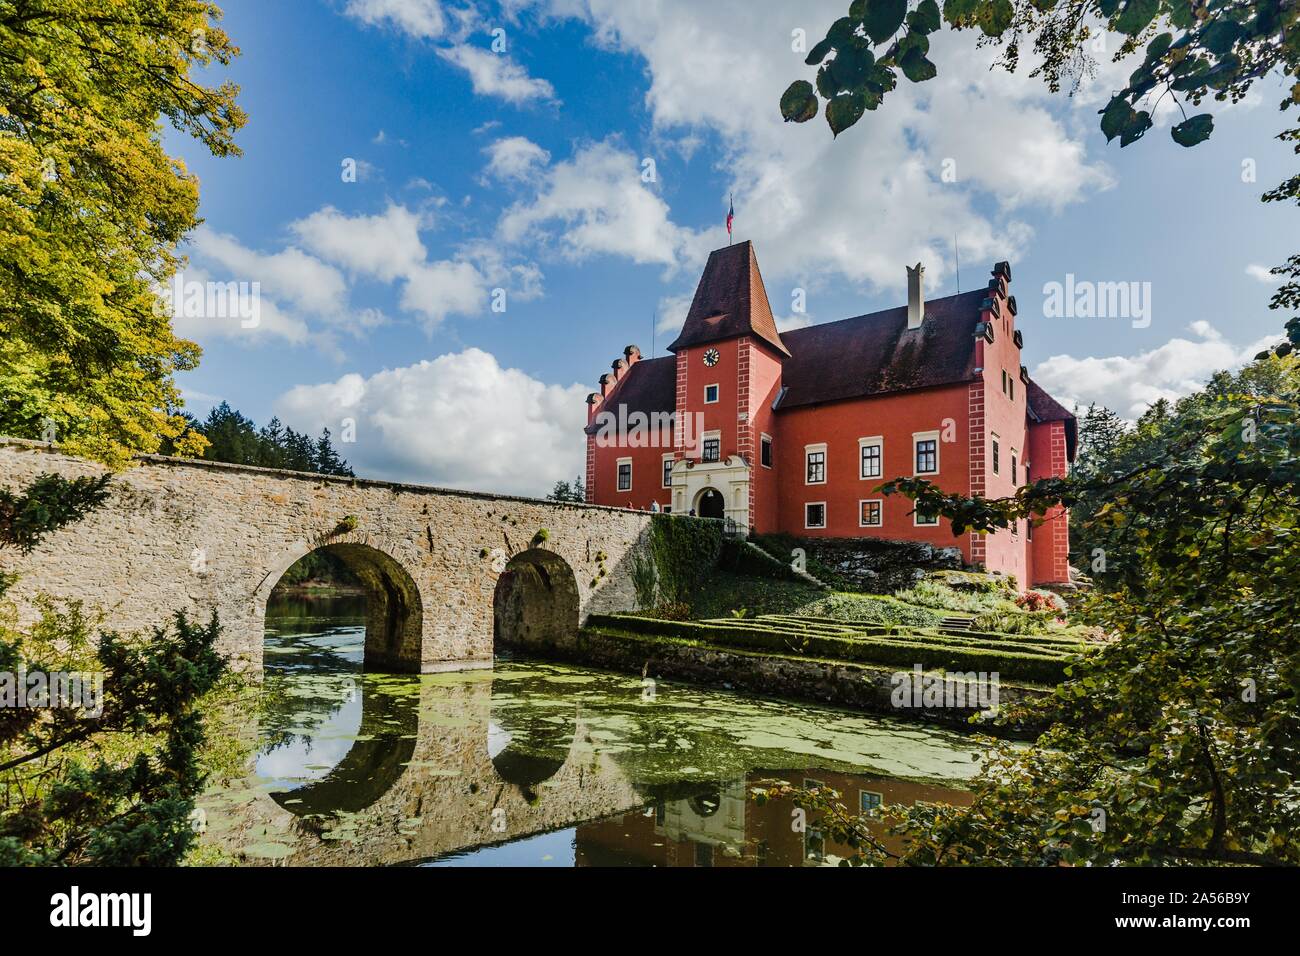 Cervena Lhota, Repubblica Ceca - 28 Settembre 2019: vista del famoso castello rosso permanente sulla roccia al centro del lago con il ponte di pietra in tutta l'acqua. Foto Stock